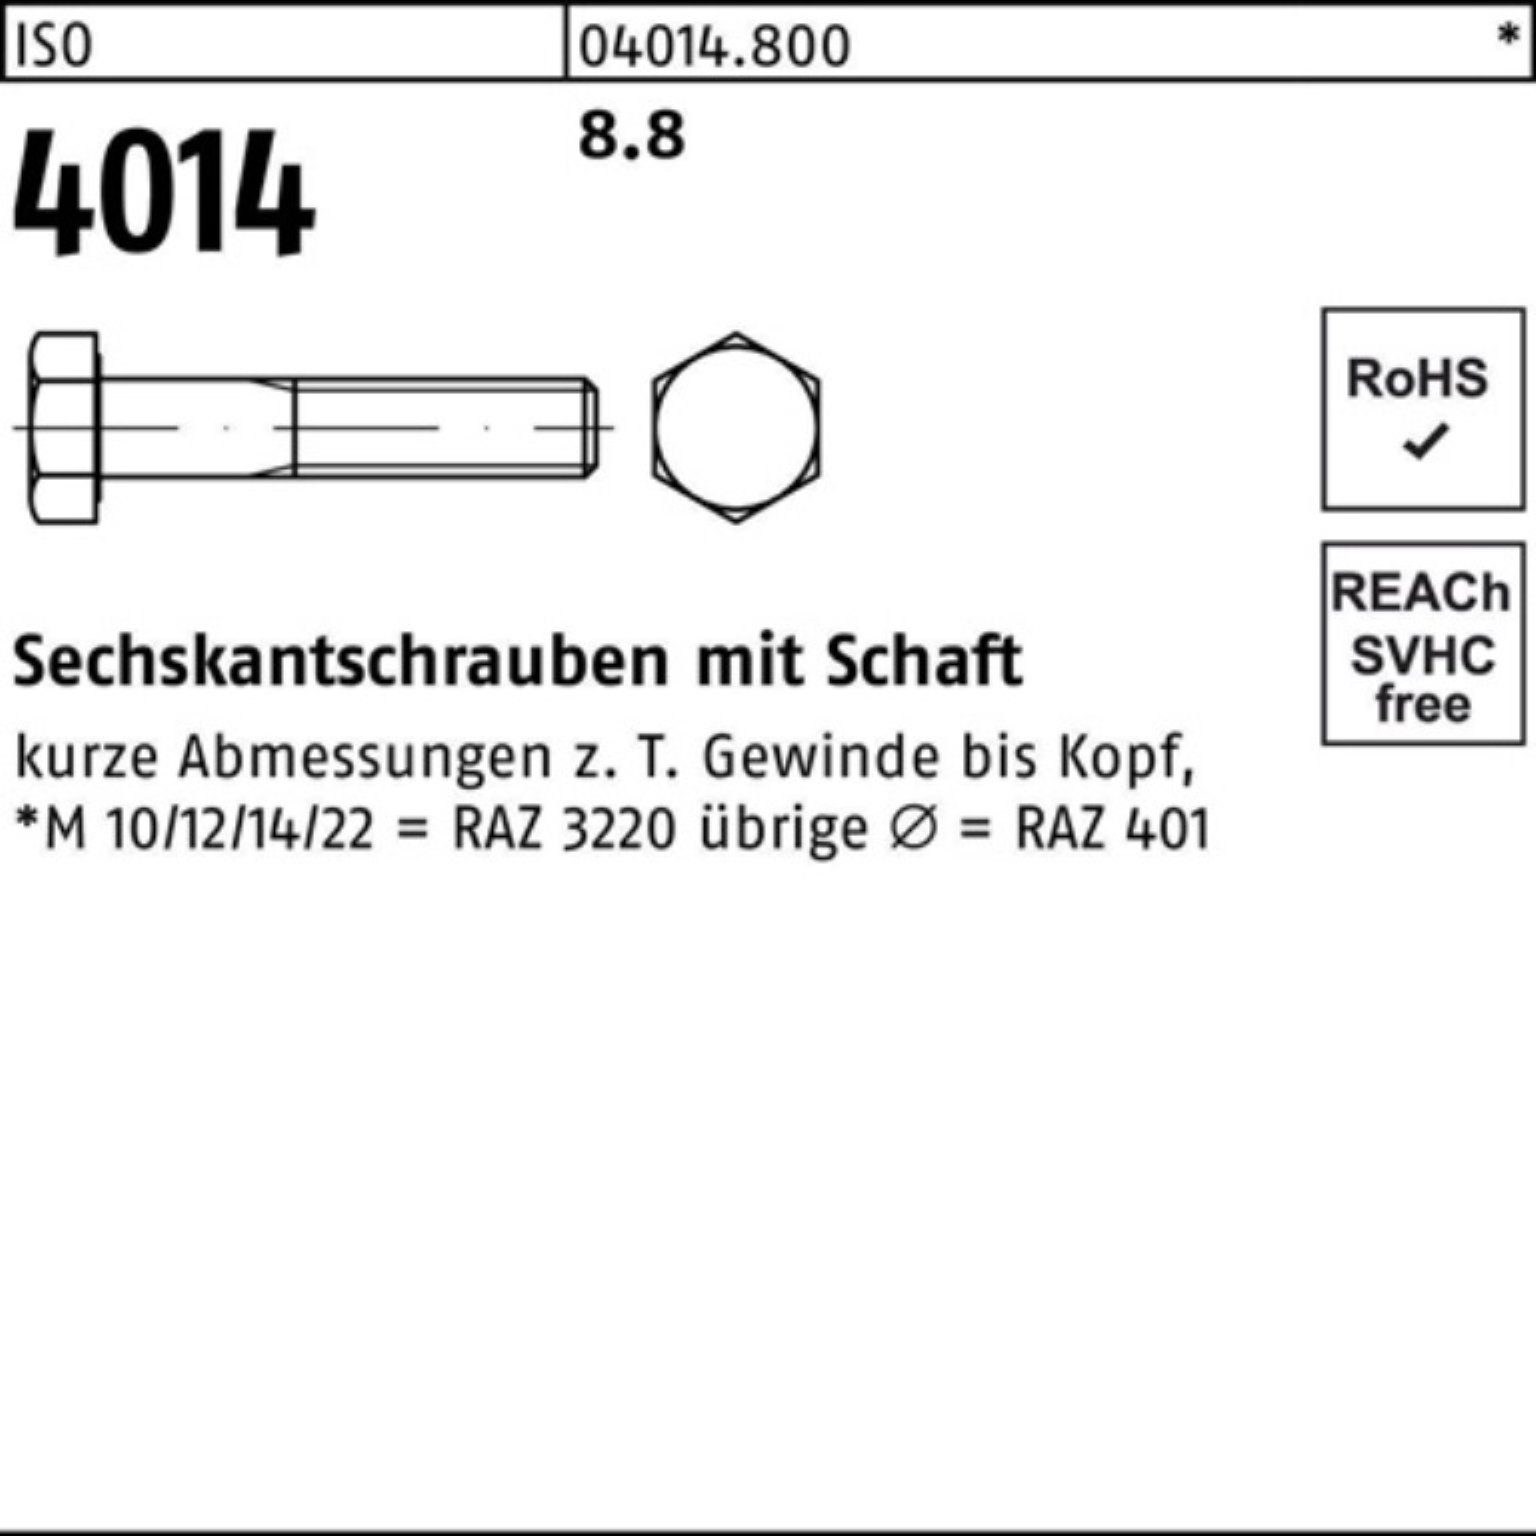 Pack 4014 Bufab Sechskantschraube 100er 8.8 Schaft Sechskantschraube 1 330 M24x ISO Stück ISO